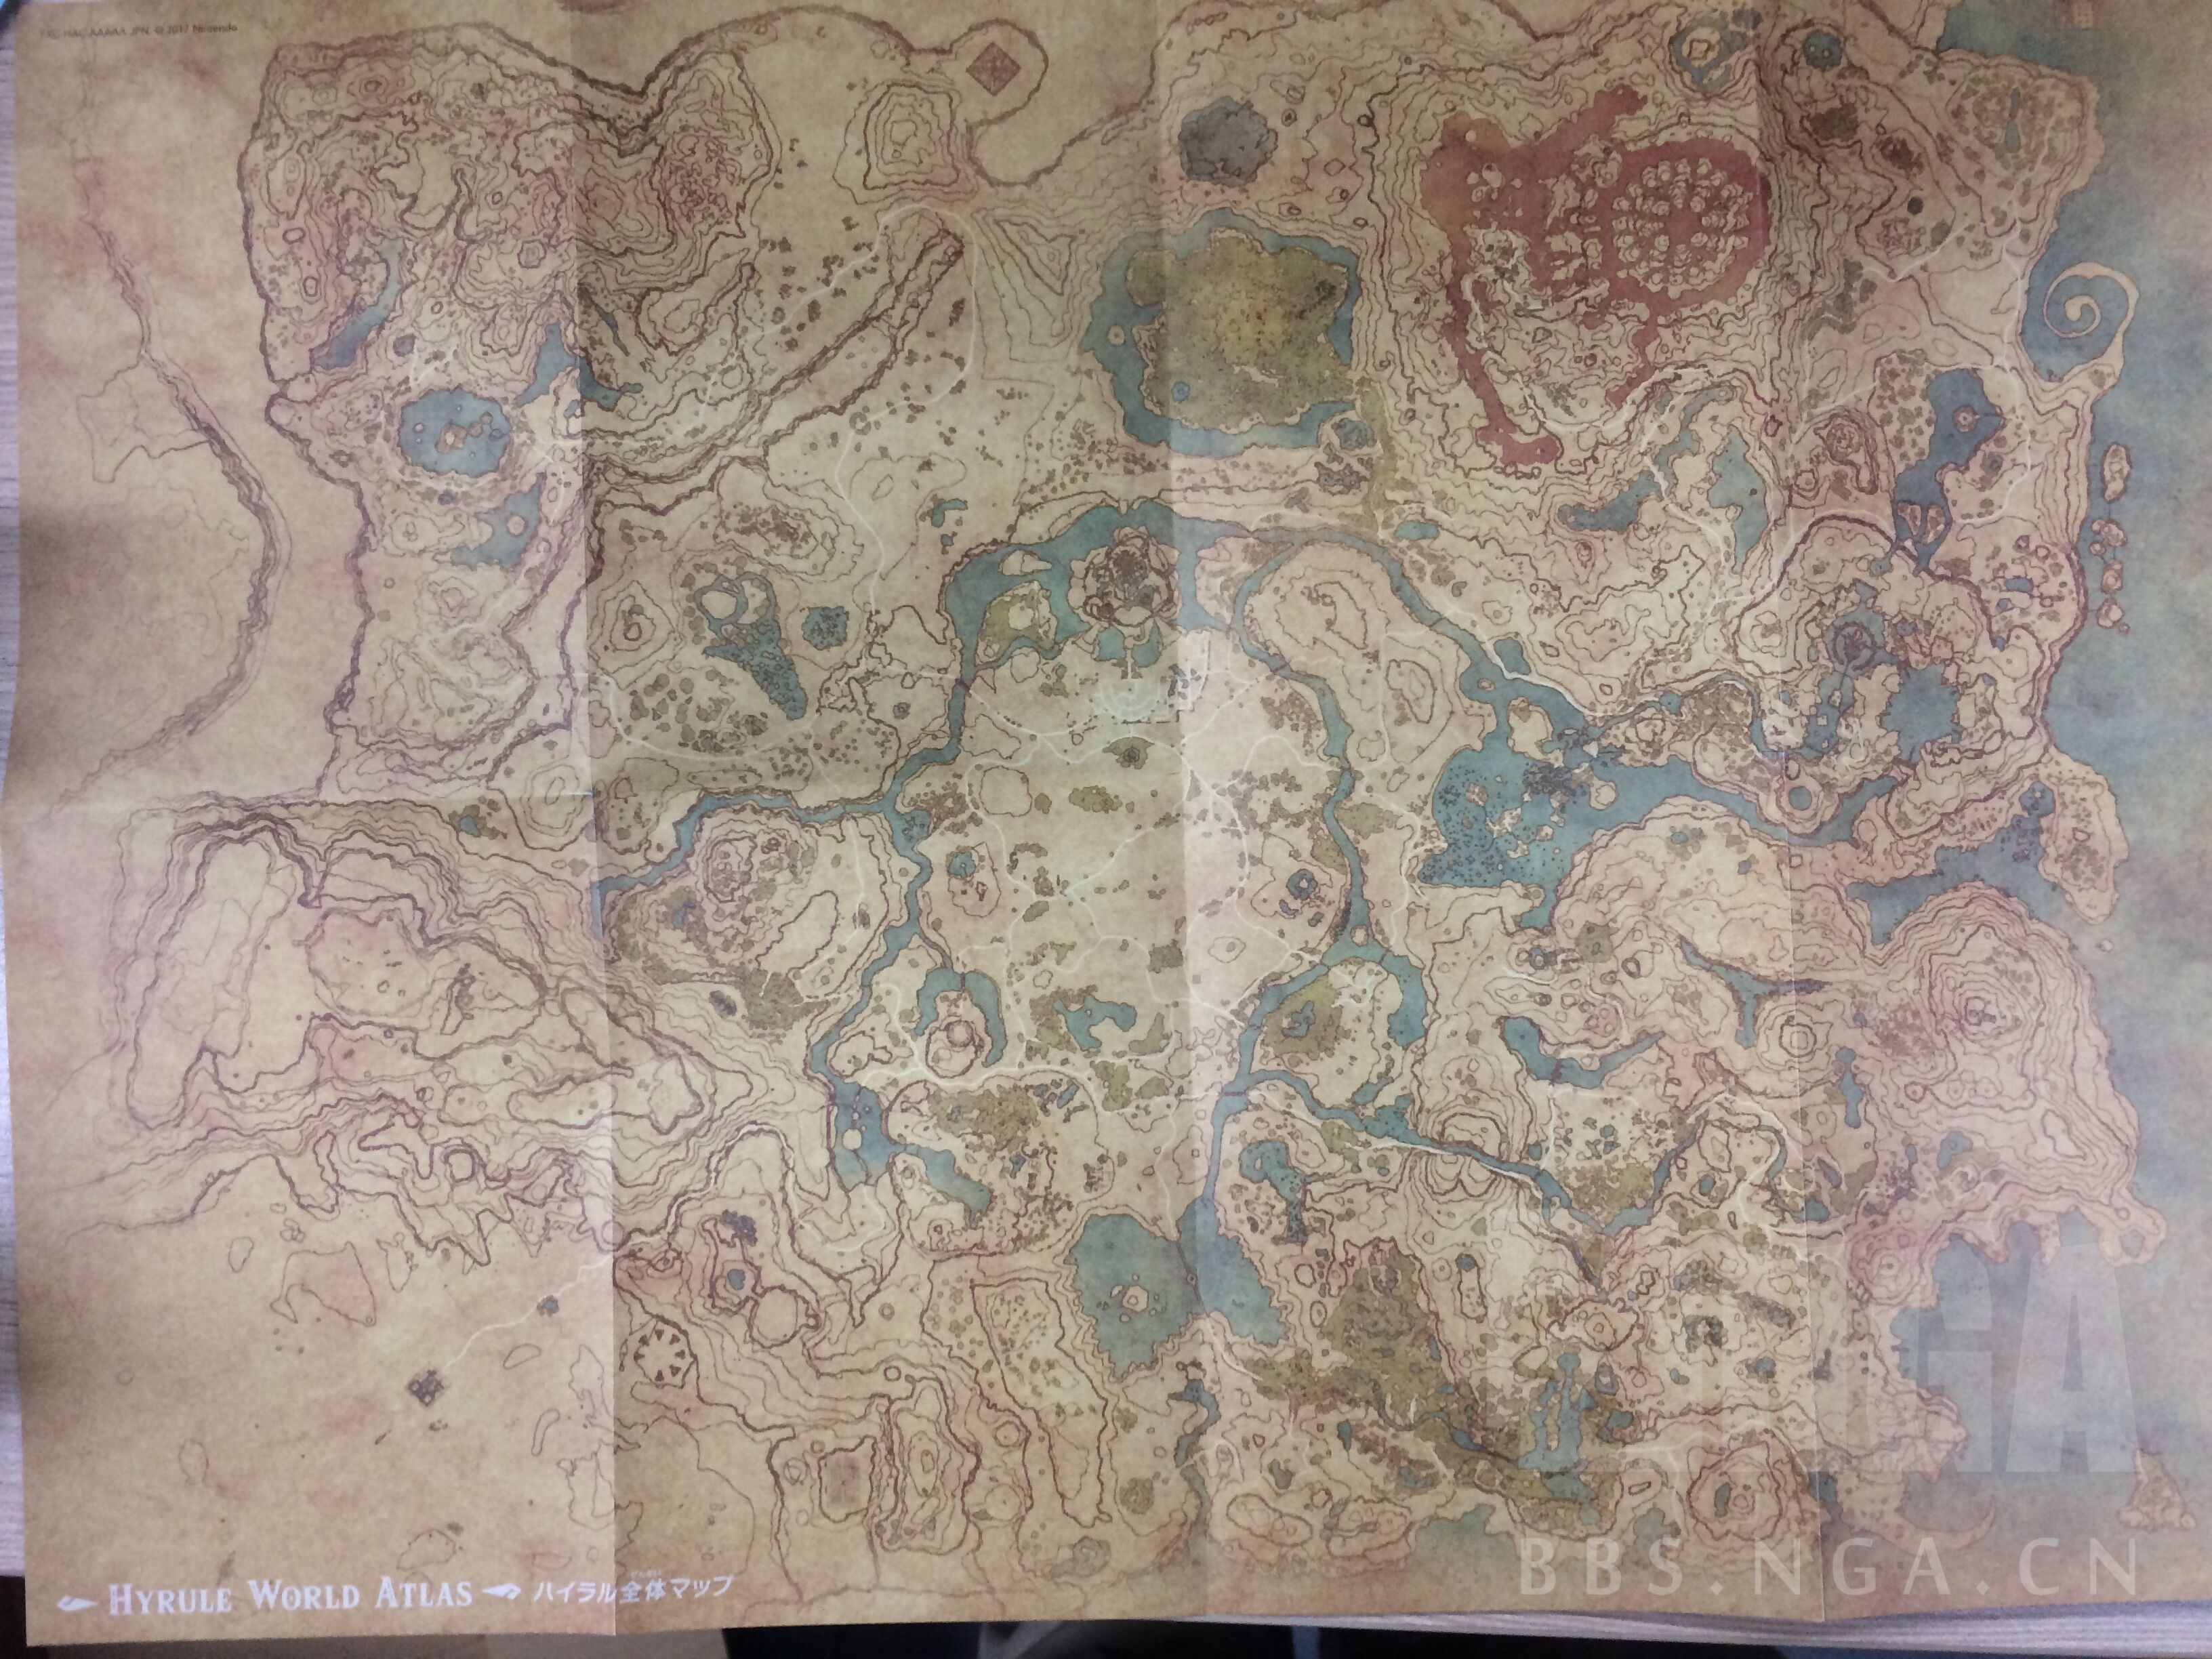 [ns《塞尔达传说旷野之息》冒险手册&地图到了,随便拍了一下